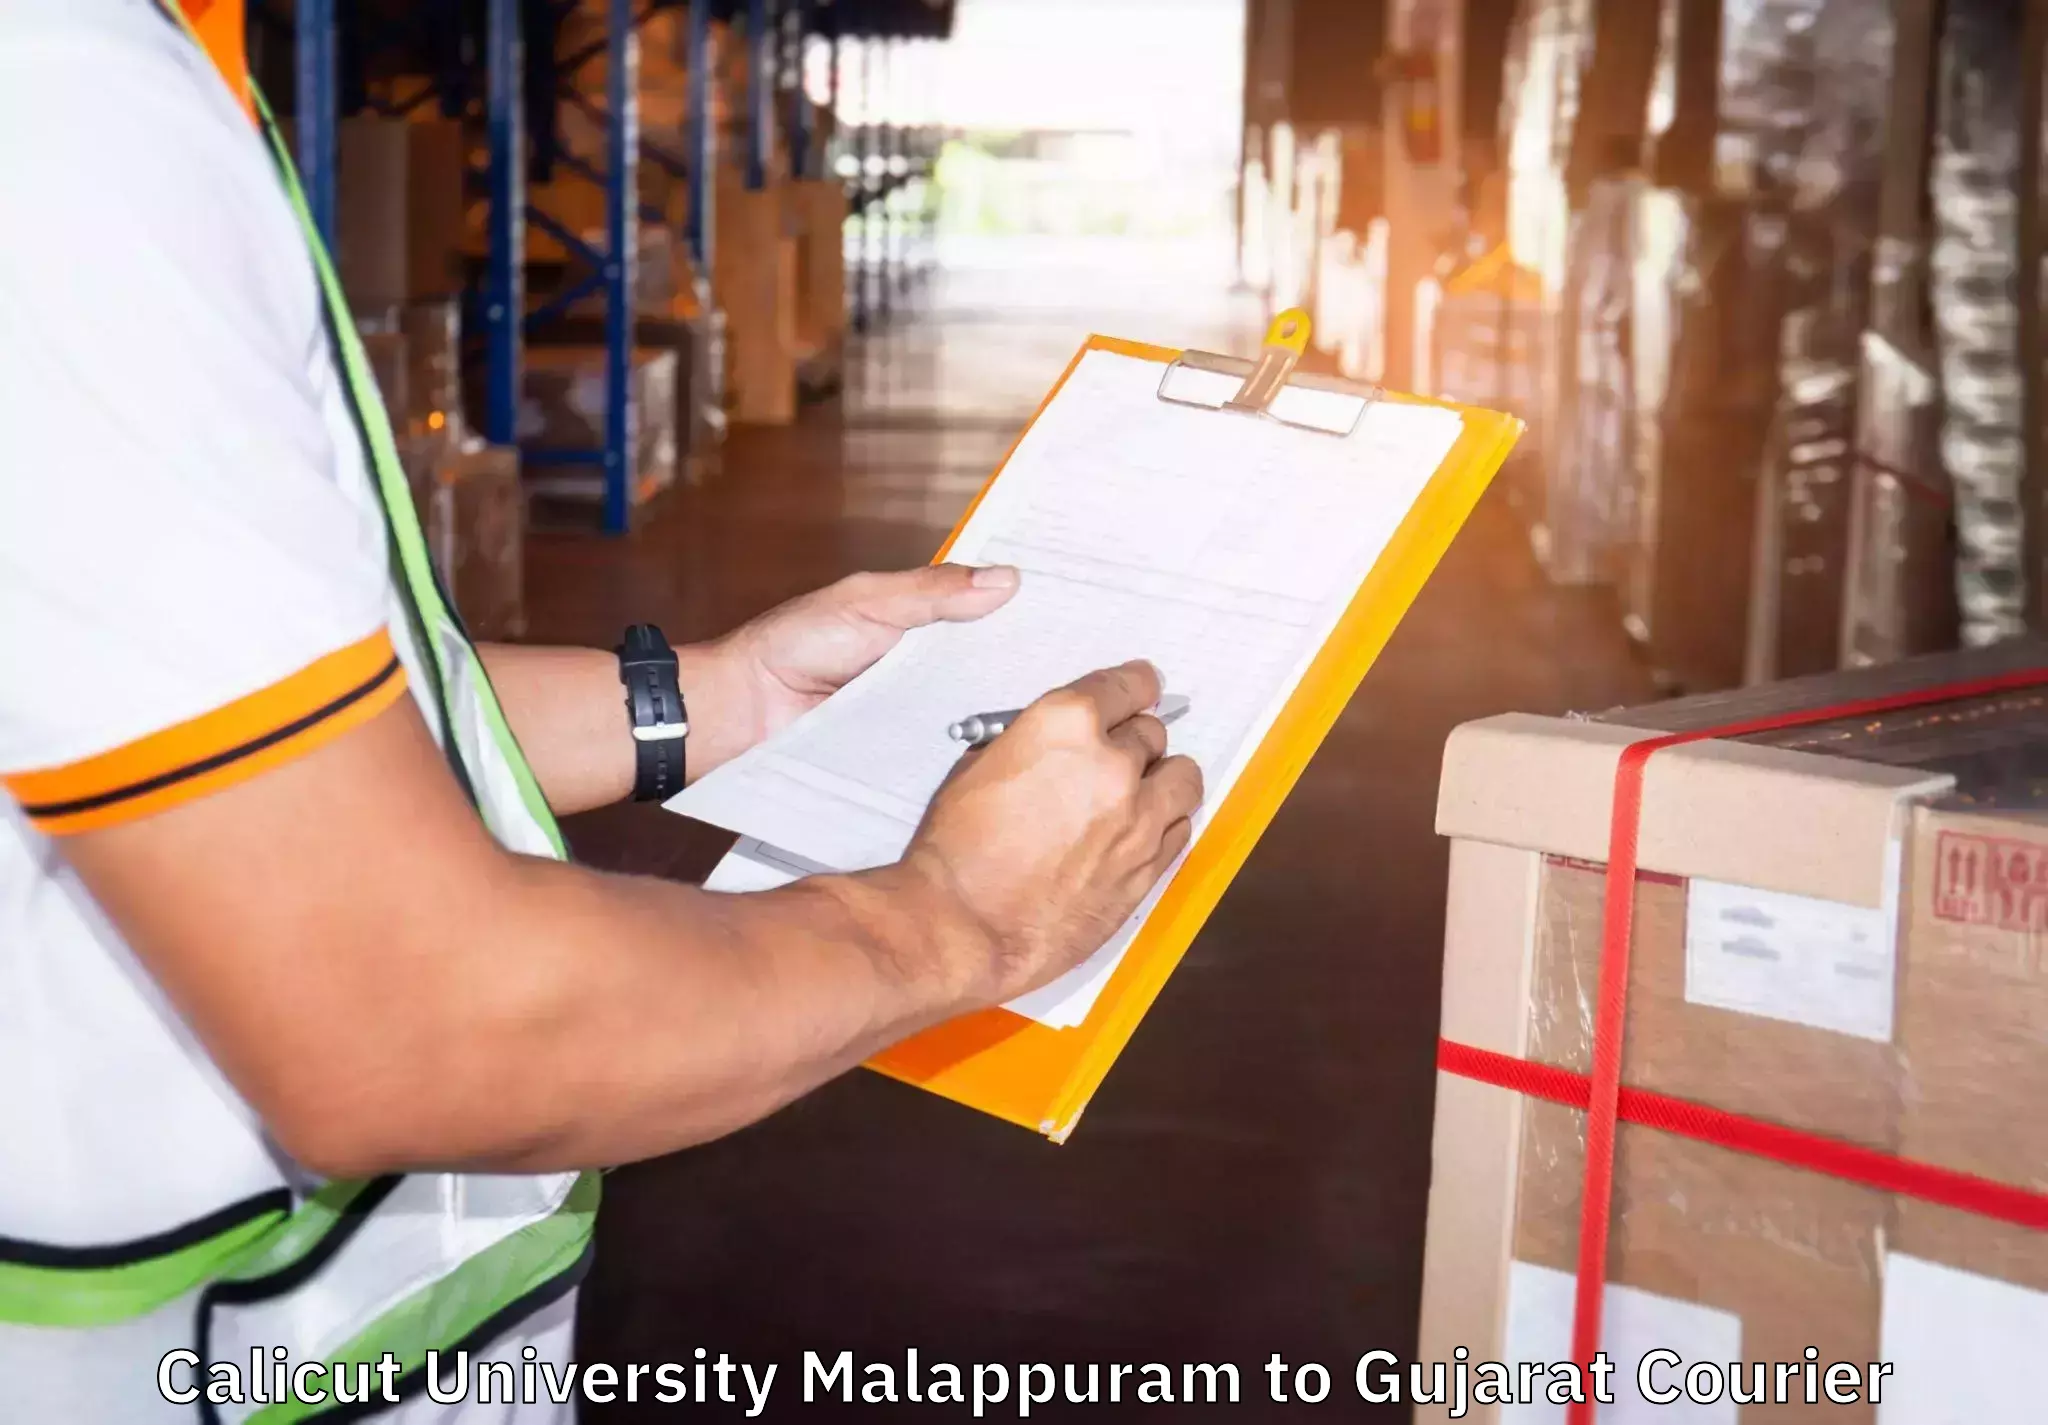 Door-to-door relocation services Calicut University Malappuram to Upleta